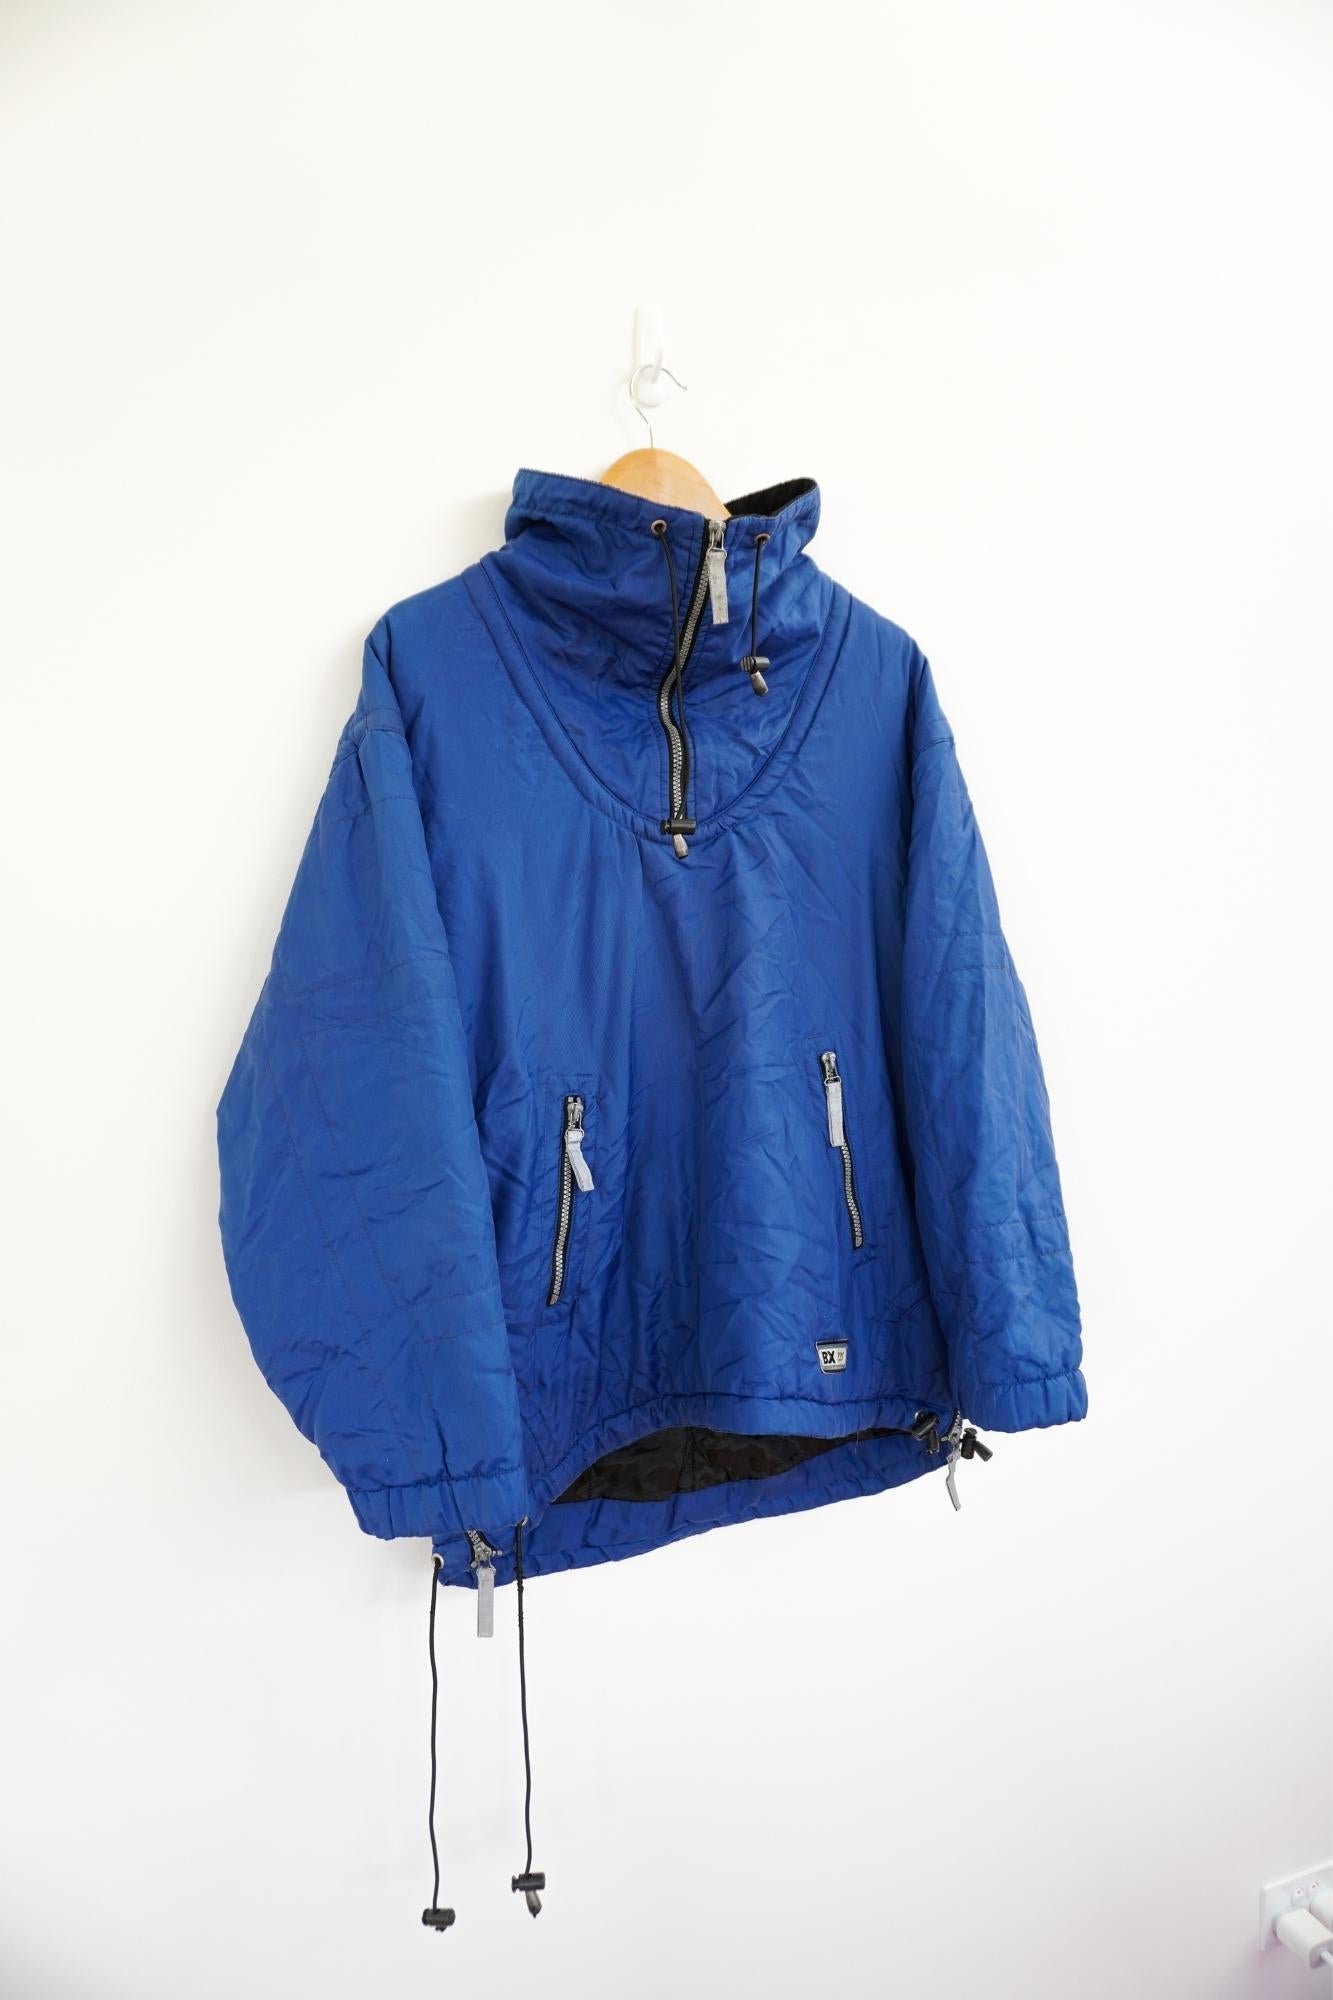 BX 228 Blue Vintage Ski Jacket